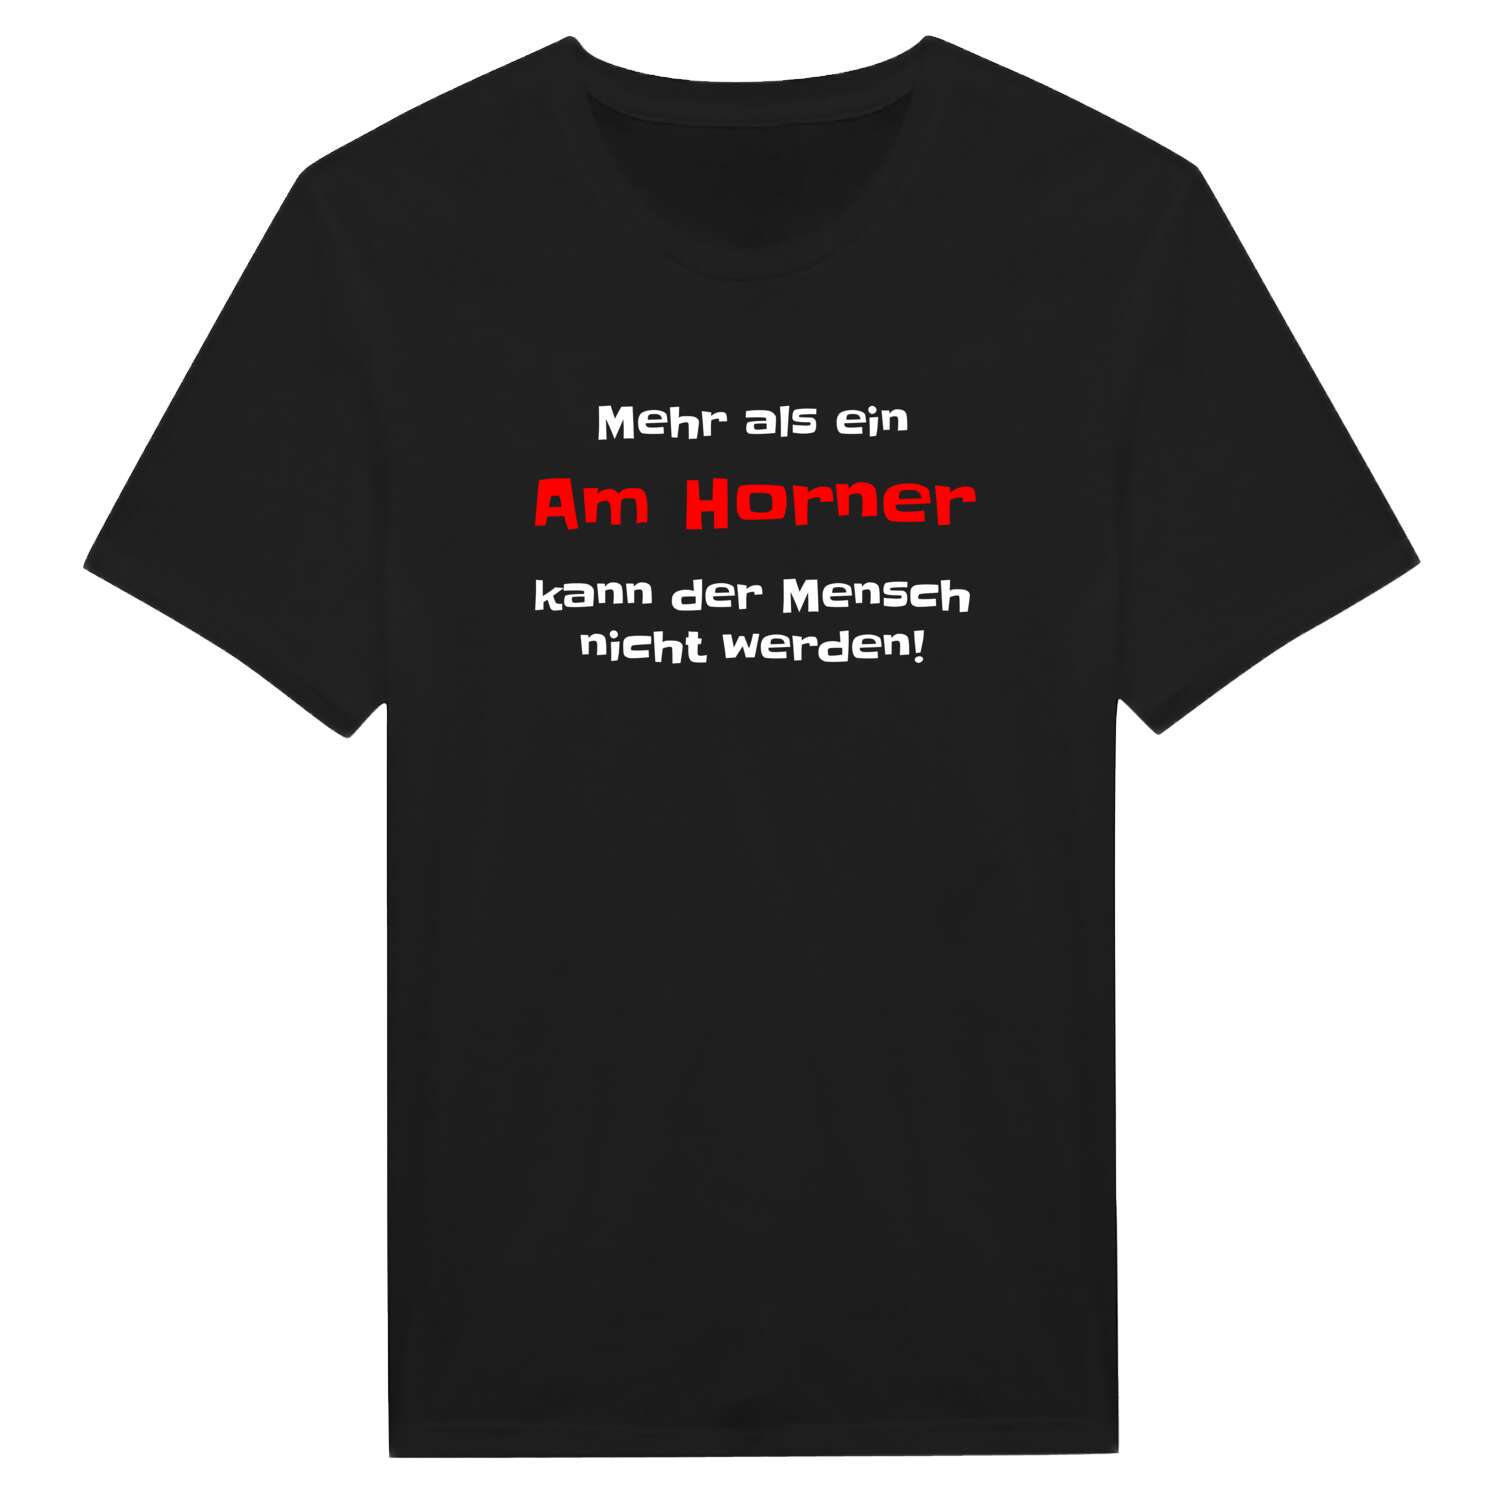 Am Horn T-Shirt »Mehr als ein«